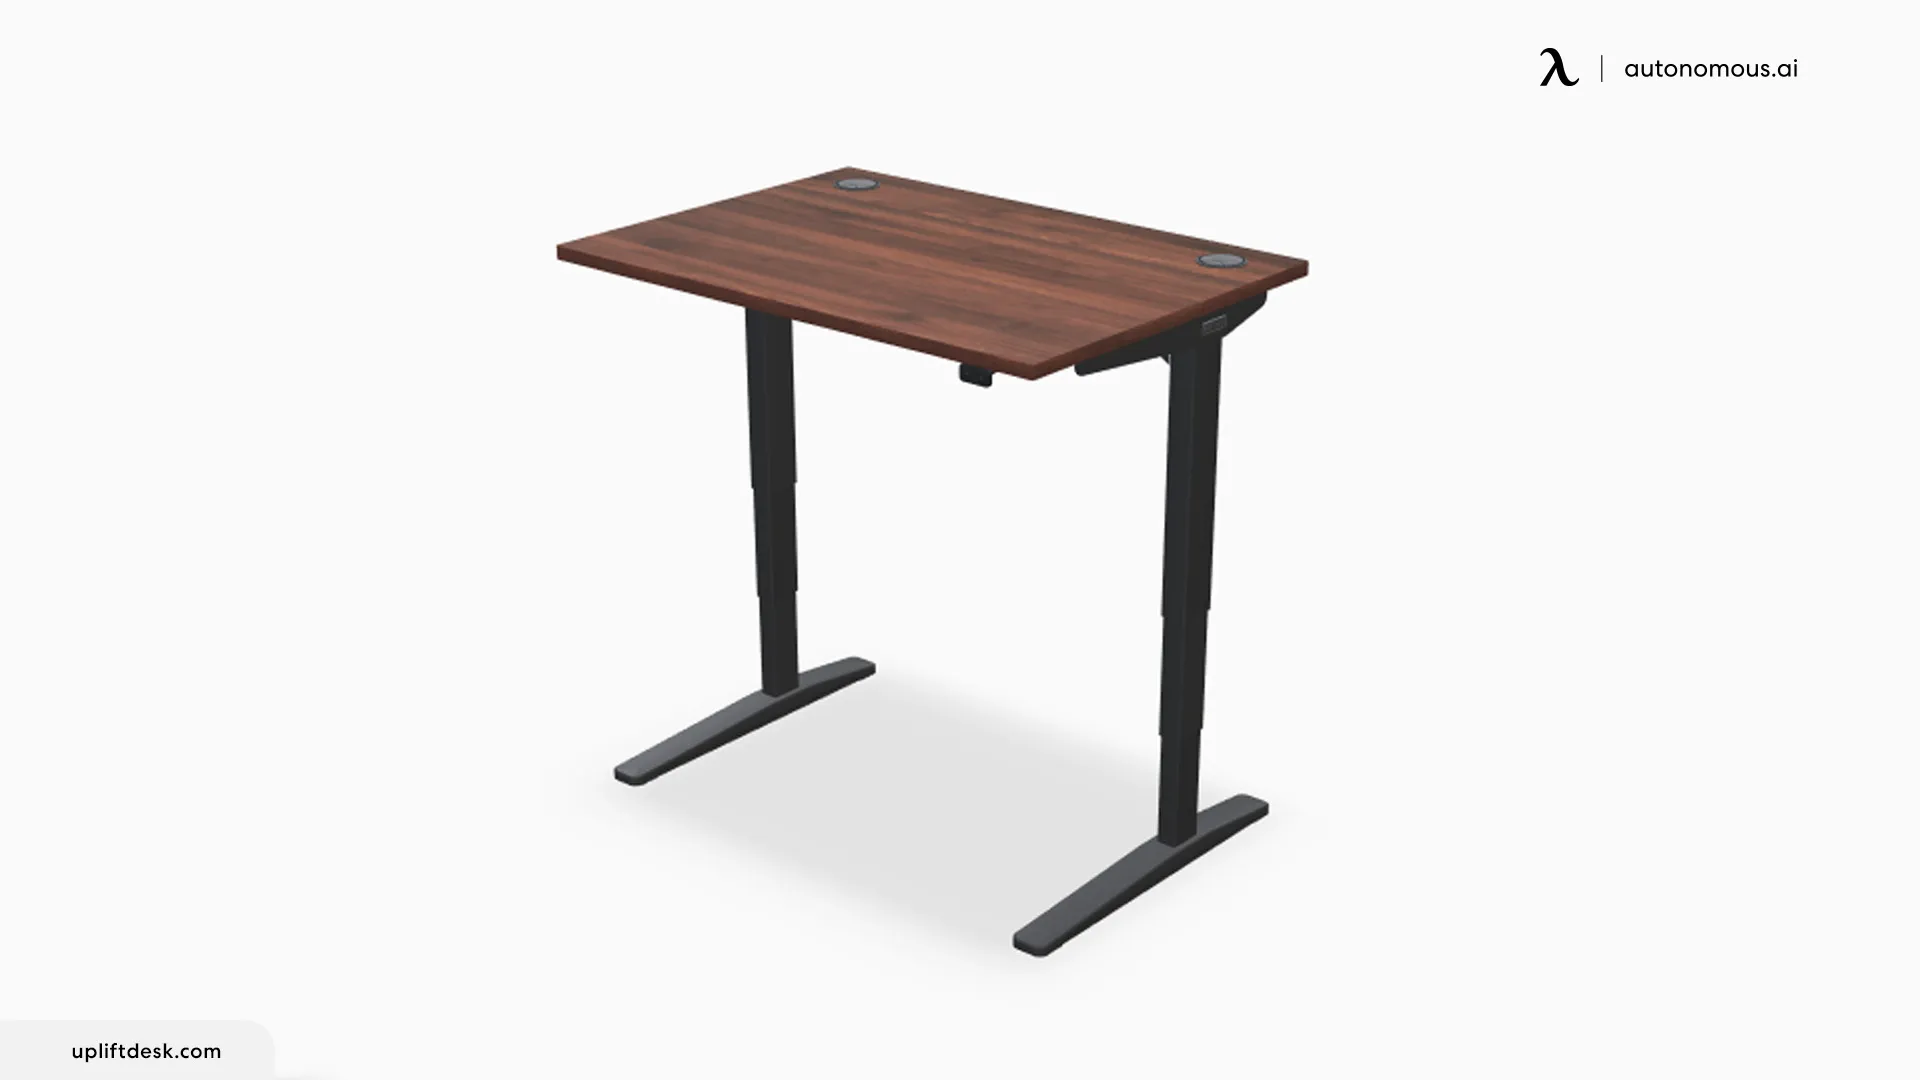 UPLIFT V2 Electric Adjustable Standing Desk